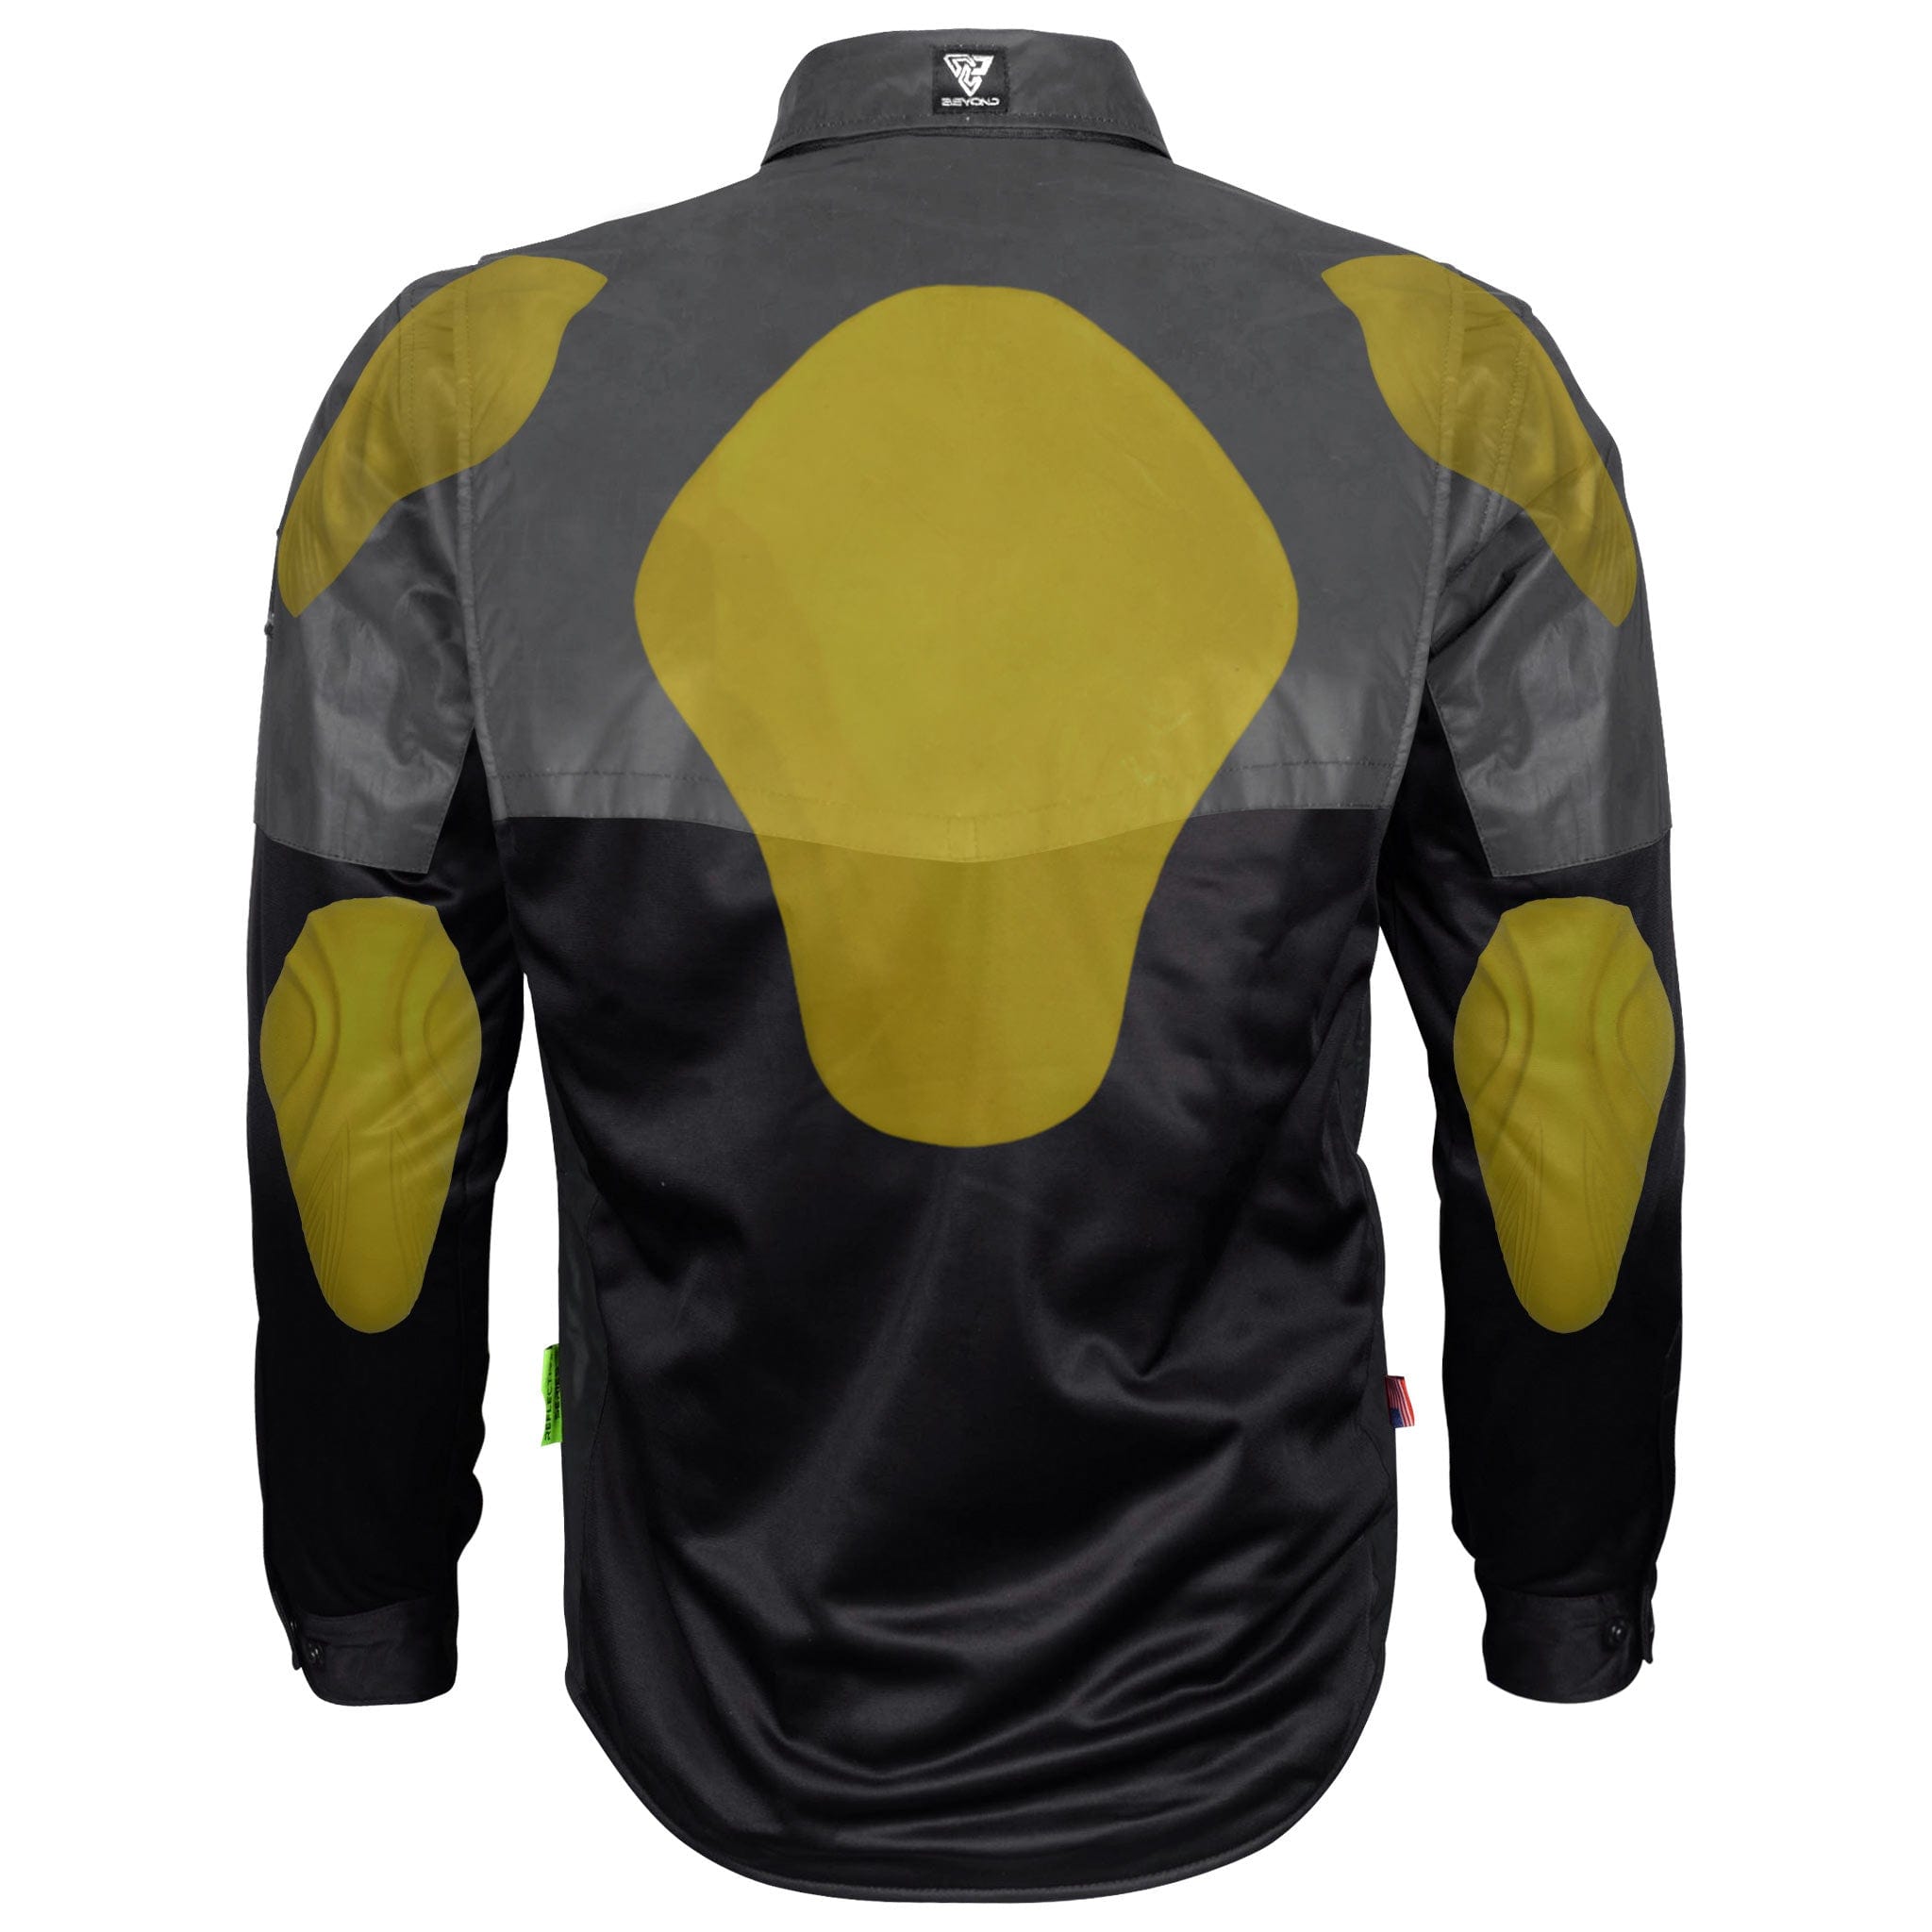 SALE Ultra Reflective Shirt "Nightfall Nebula" - Black with Pads